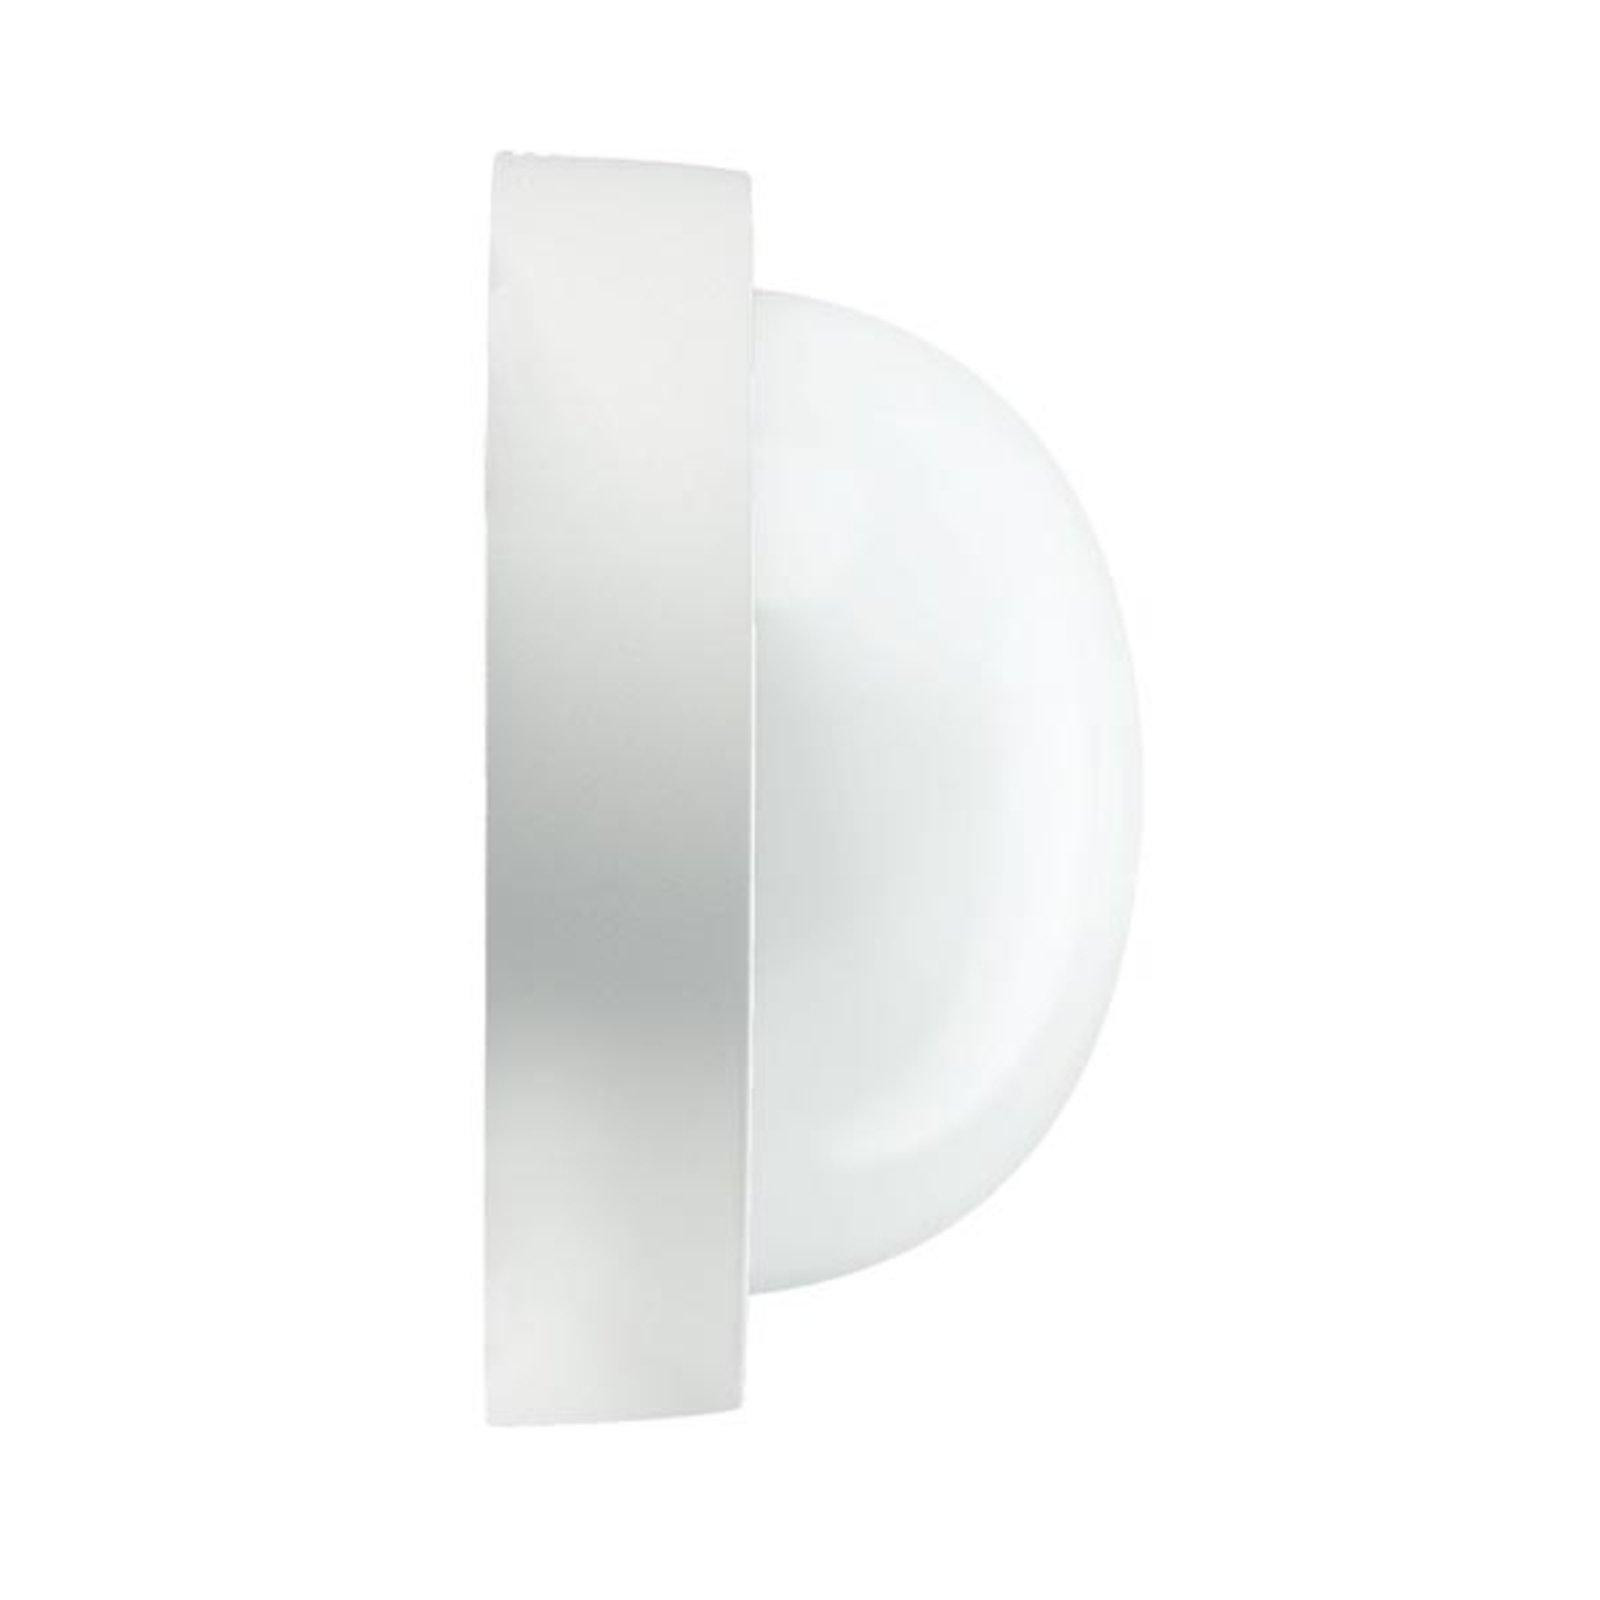 EKO 21 utendørs vegg- eller taklampe i hvit